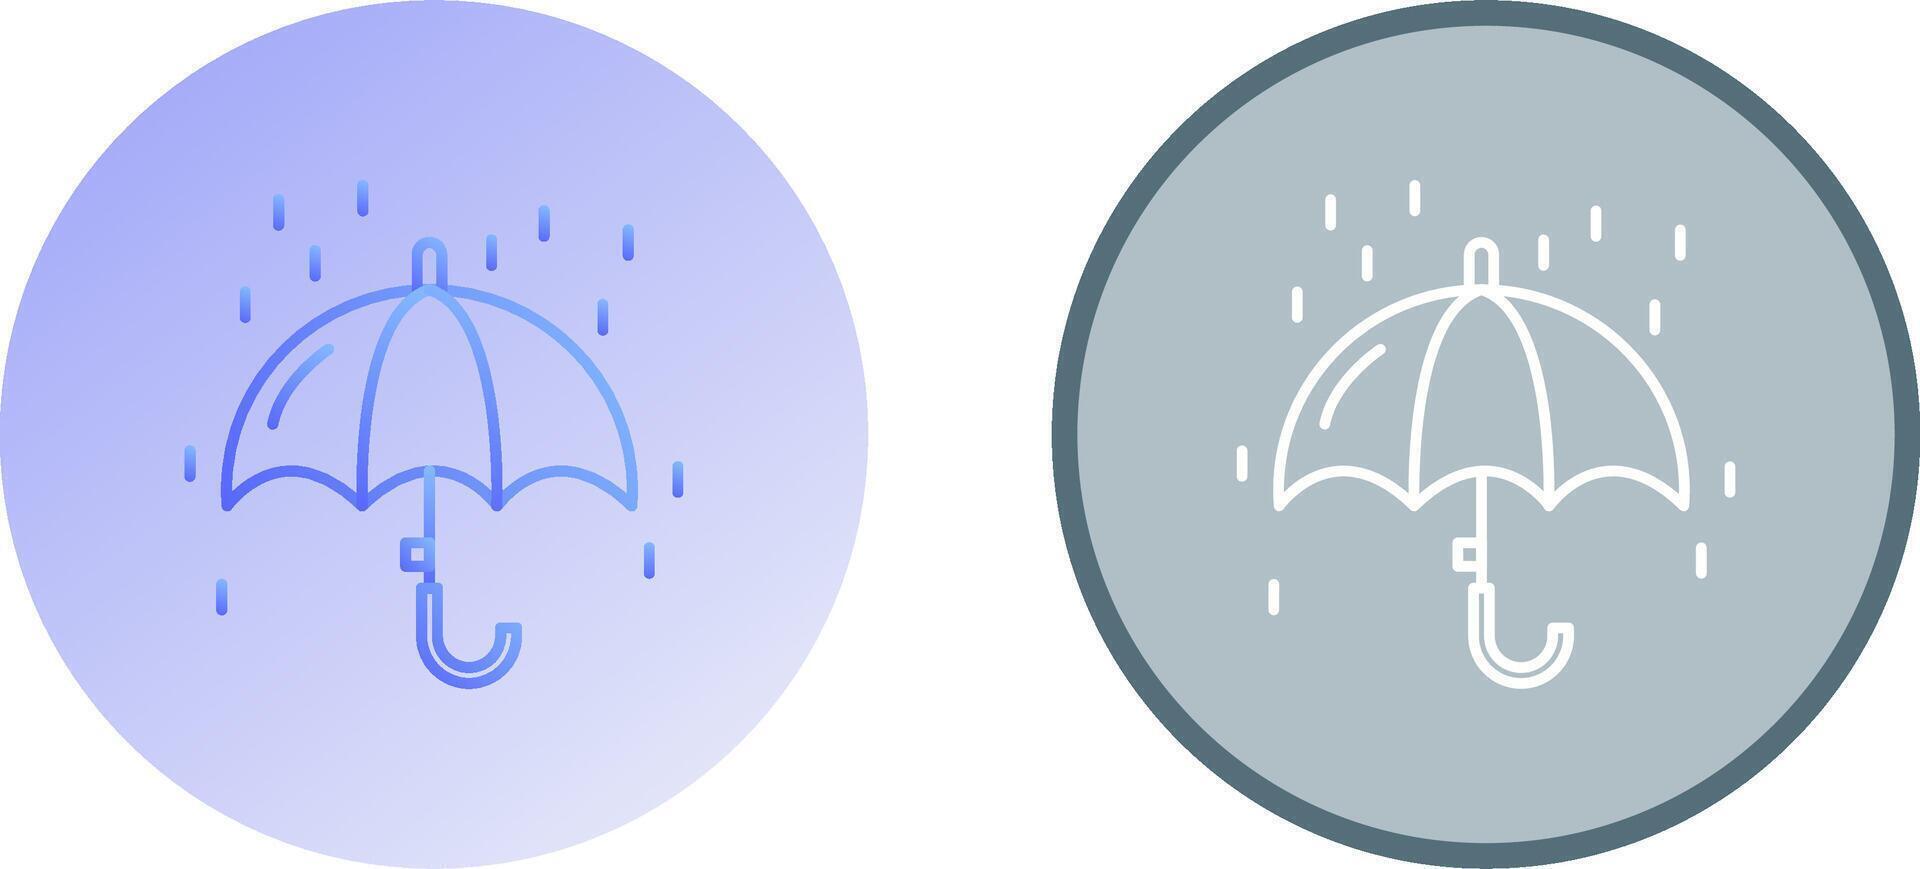 regnet Symbol Design vektor